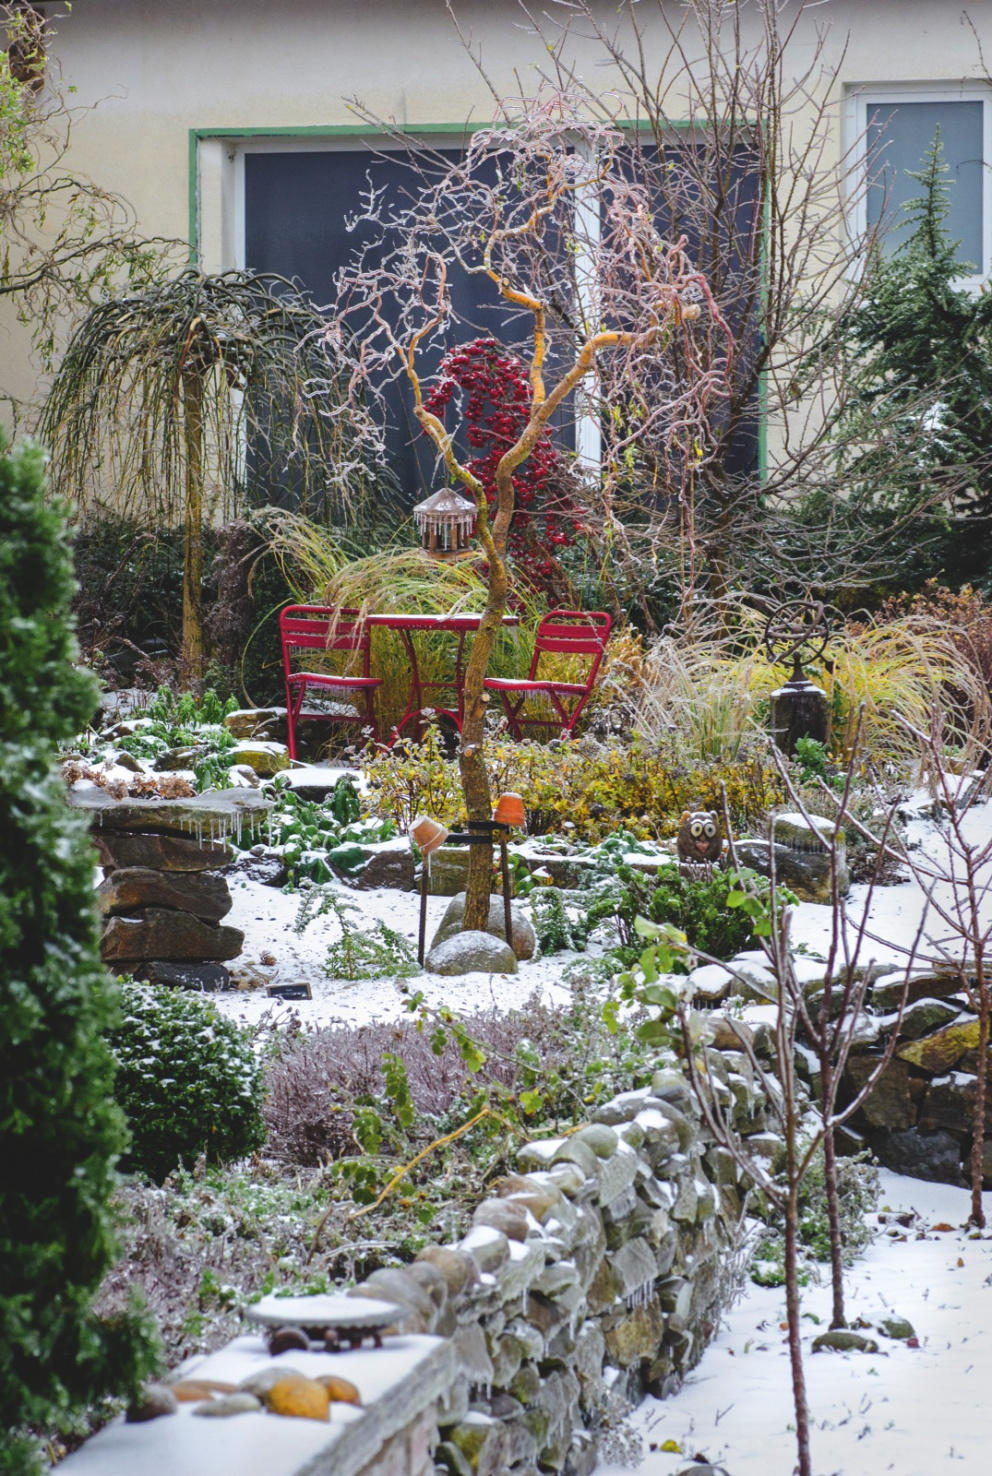 Pod mrazivou krustou uvízl také sníh. Díky němu do popředí vystupují zelené rostliny i zářivě červená barva okrasných jablíček i zahradního nábytku.